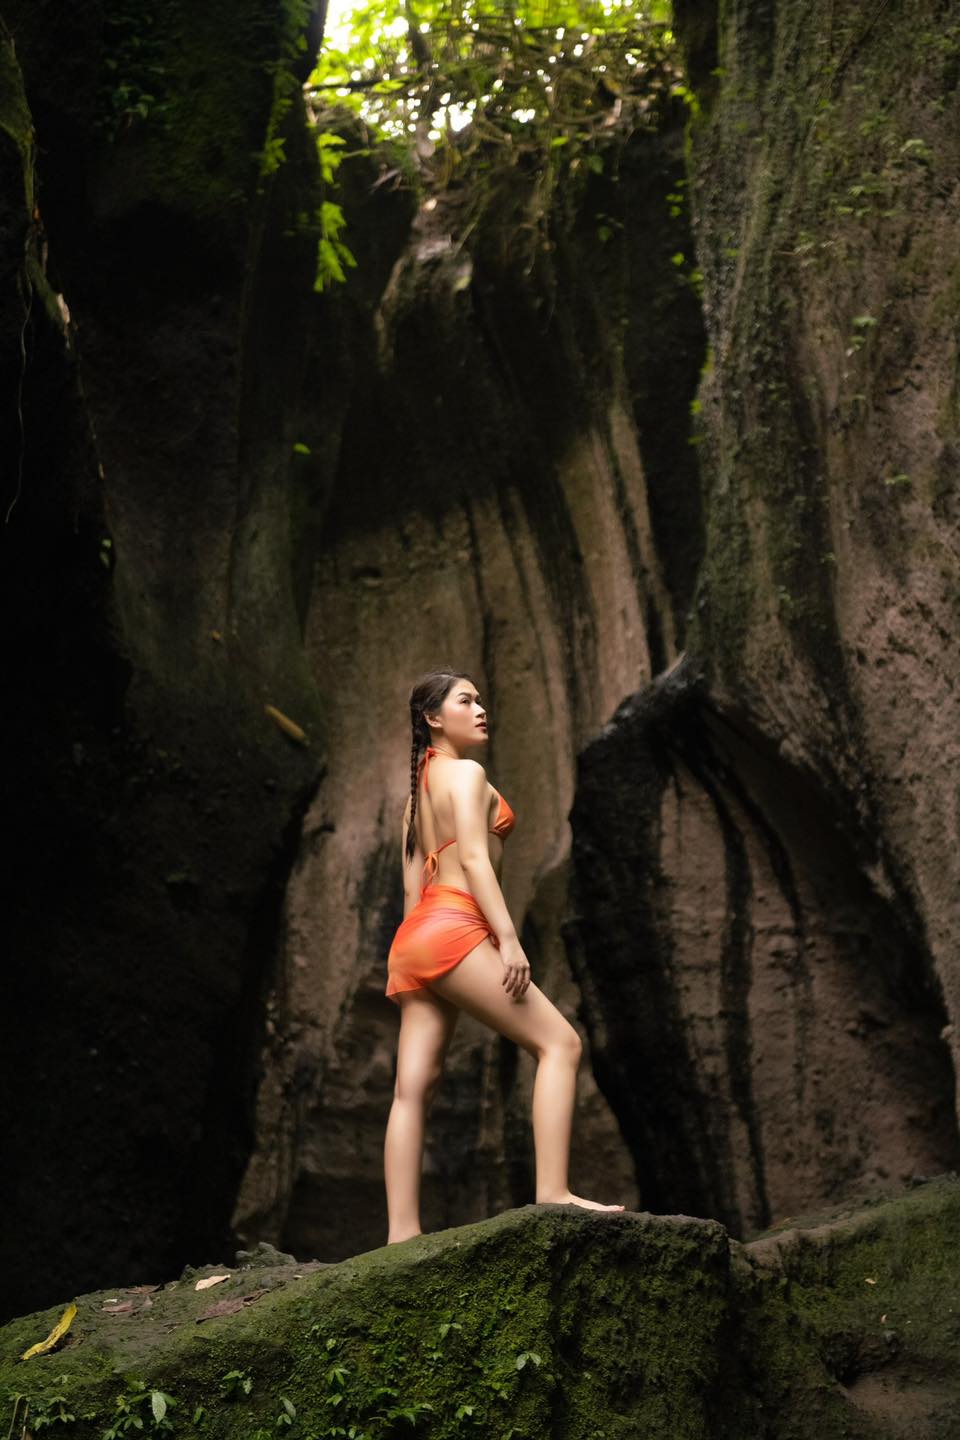 Ái nữ nhà đại gia thủy sản diện bikini gợi cảm trong hang động - 1